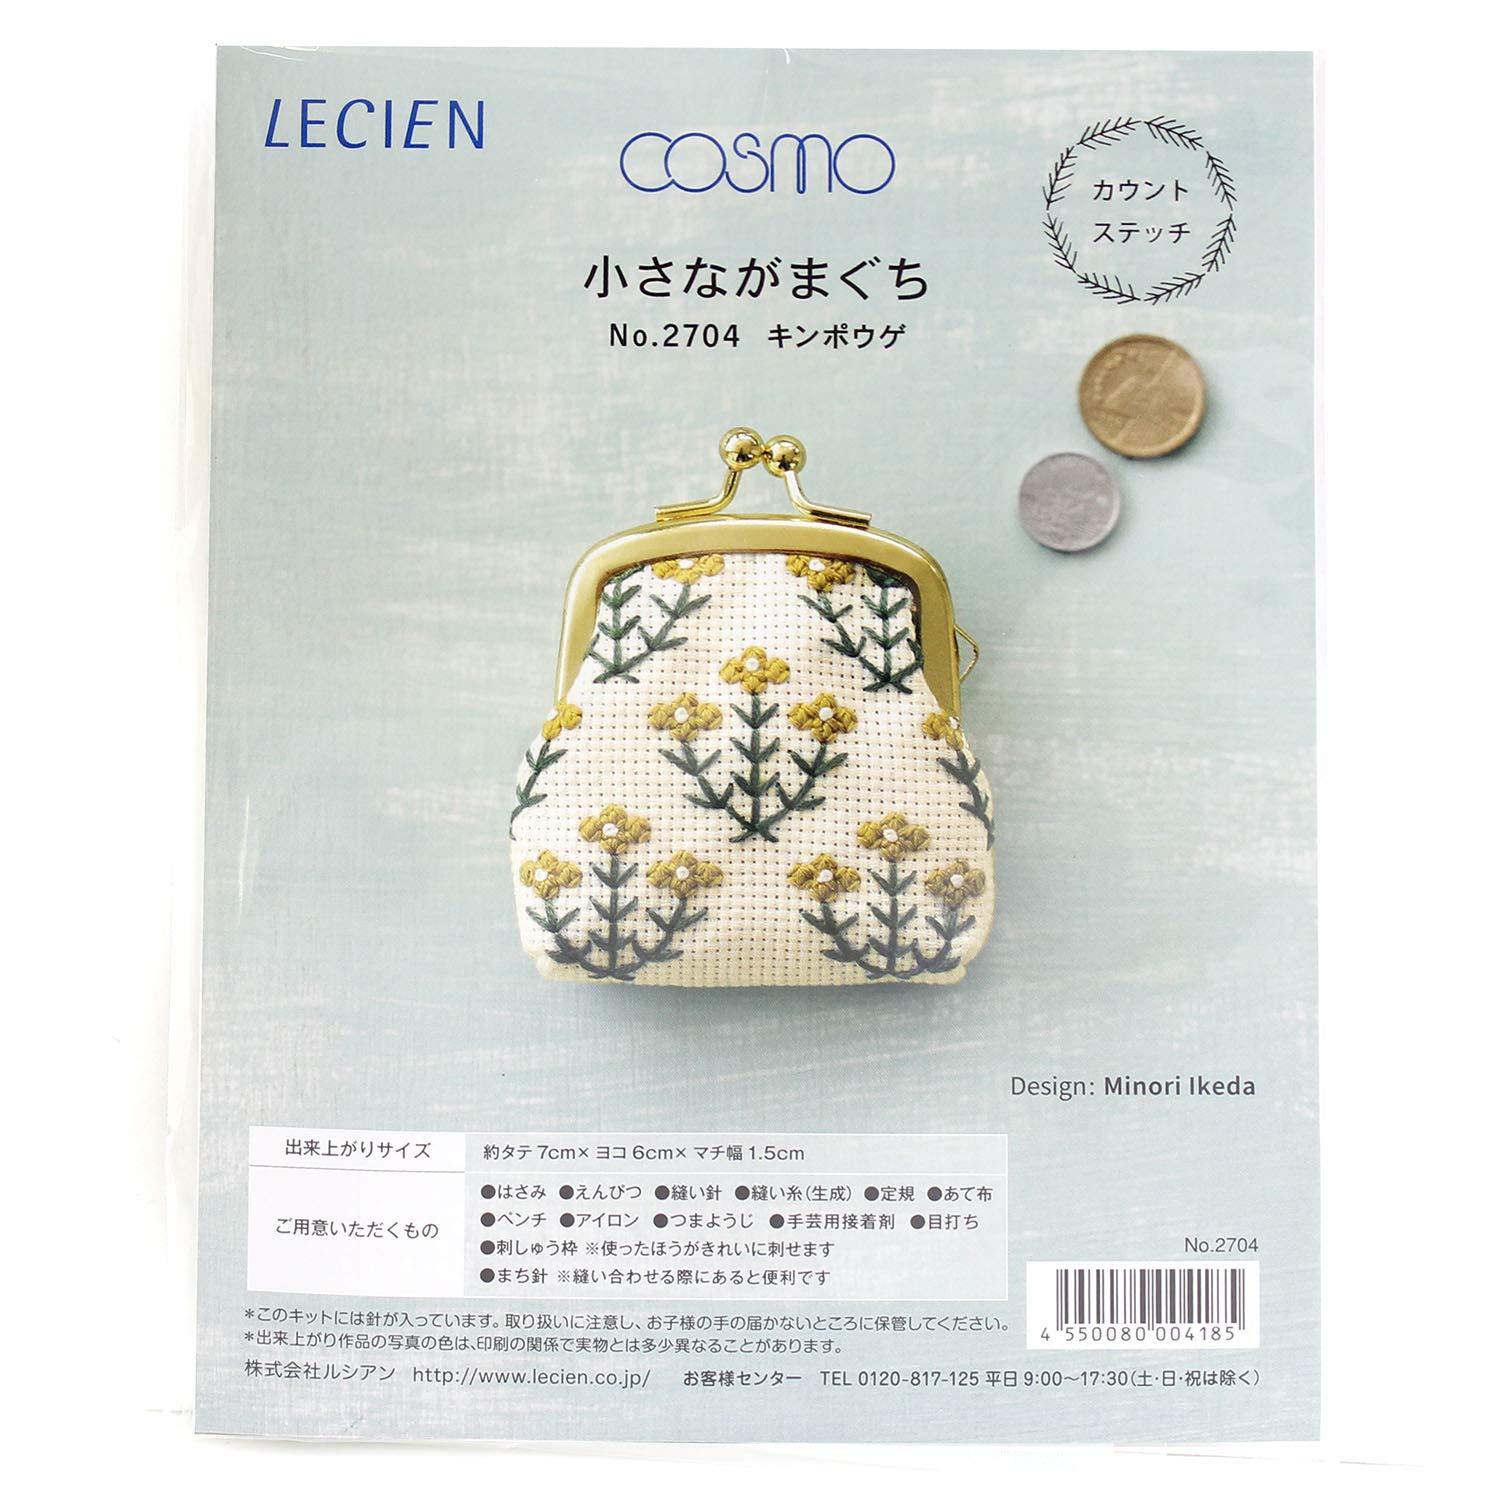 LECIEN (ルシアン) 刺繍キット カウントステッチ 小さながまぐち キンポウゲ・2704 (1402686)